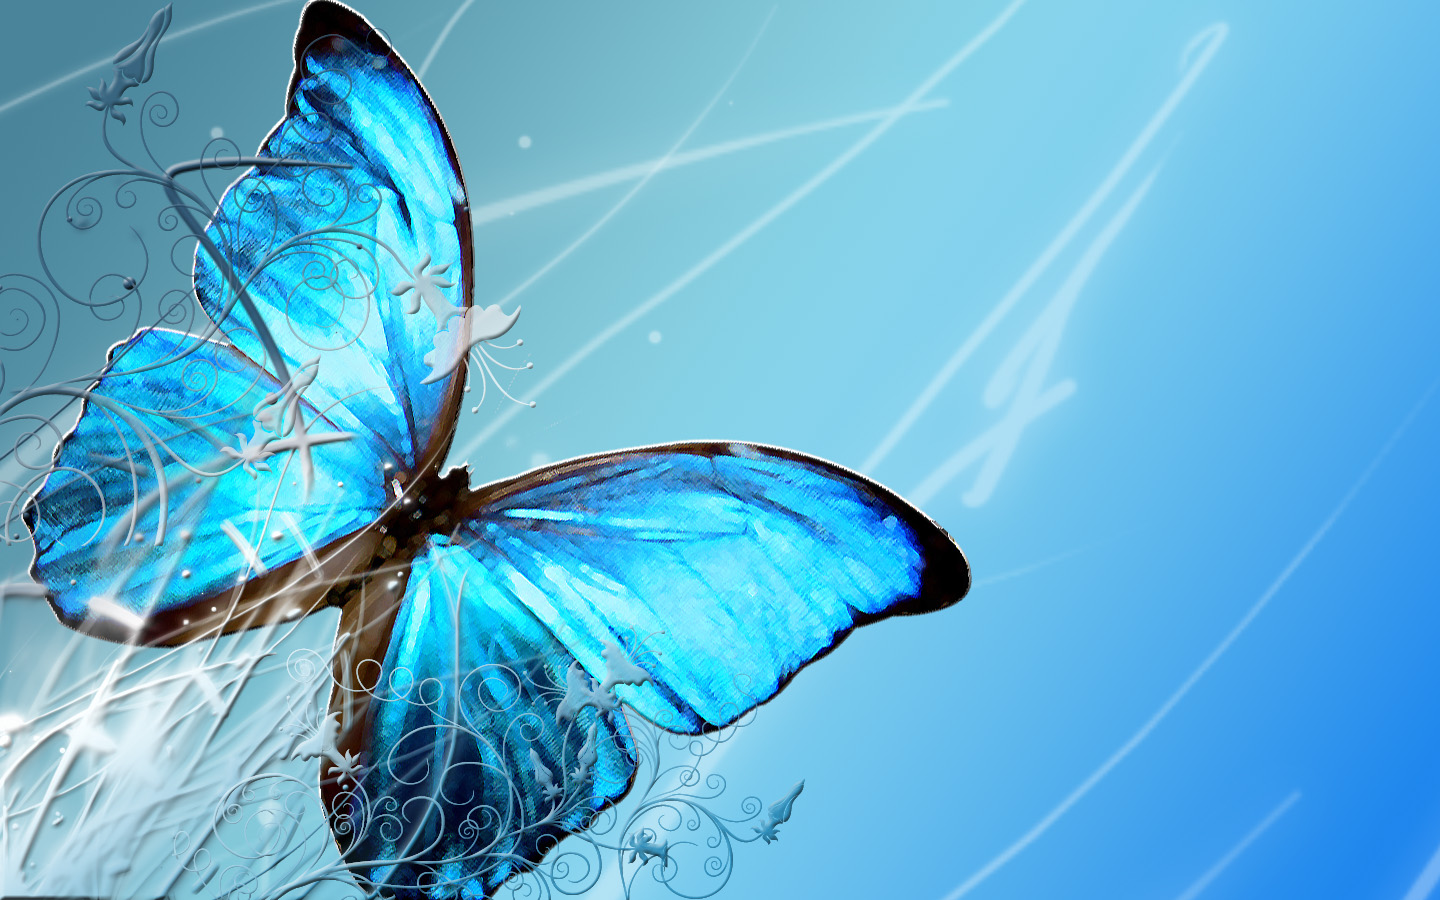 Butterfly Wallpaper Desktop